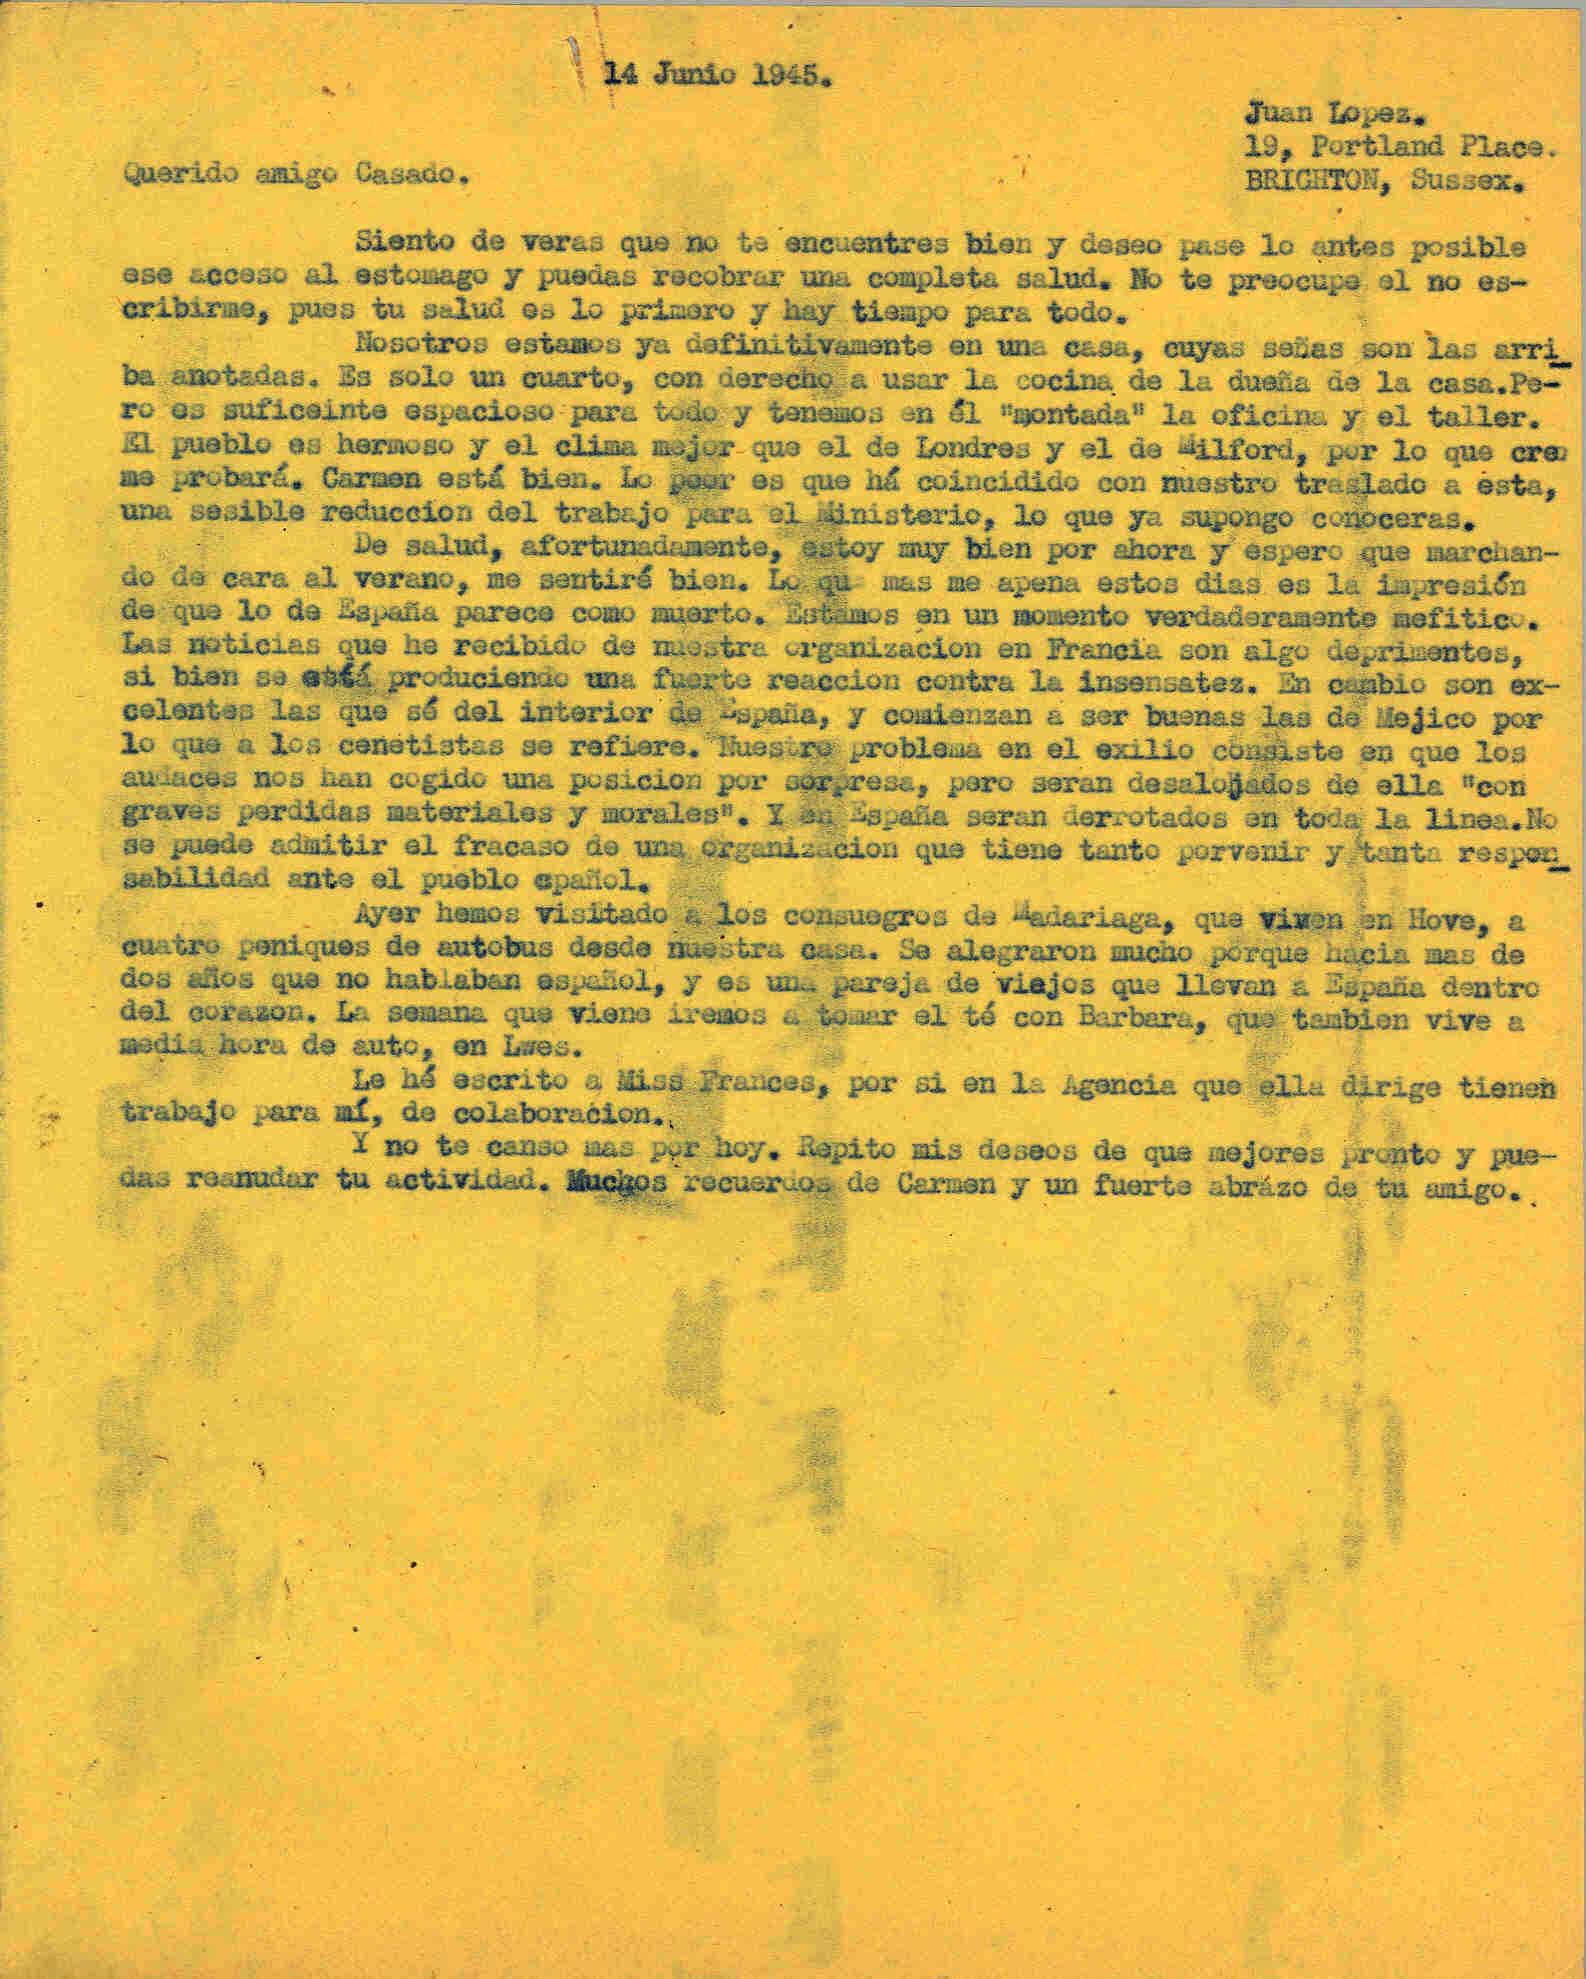 Carta a Segismundo Casado hablando de su nueva residencia y de las malas noticias de la organización en Francia pero buenas de España y México.